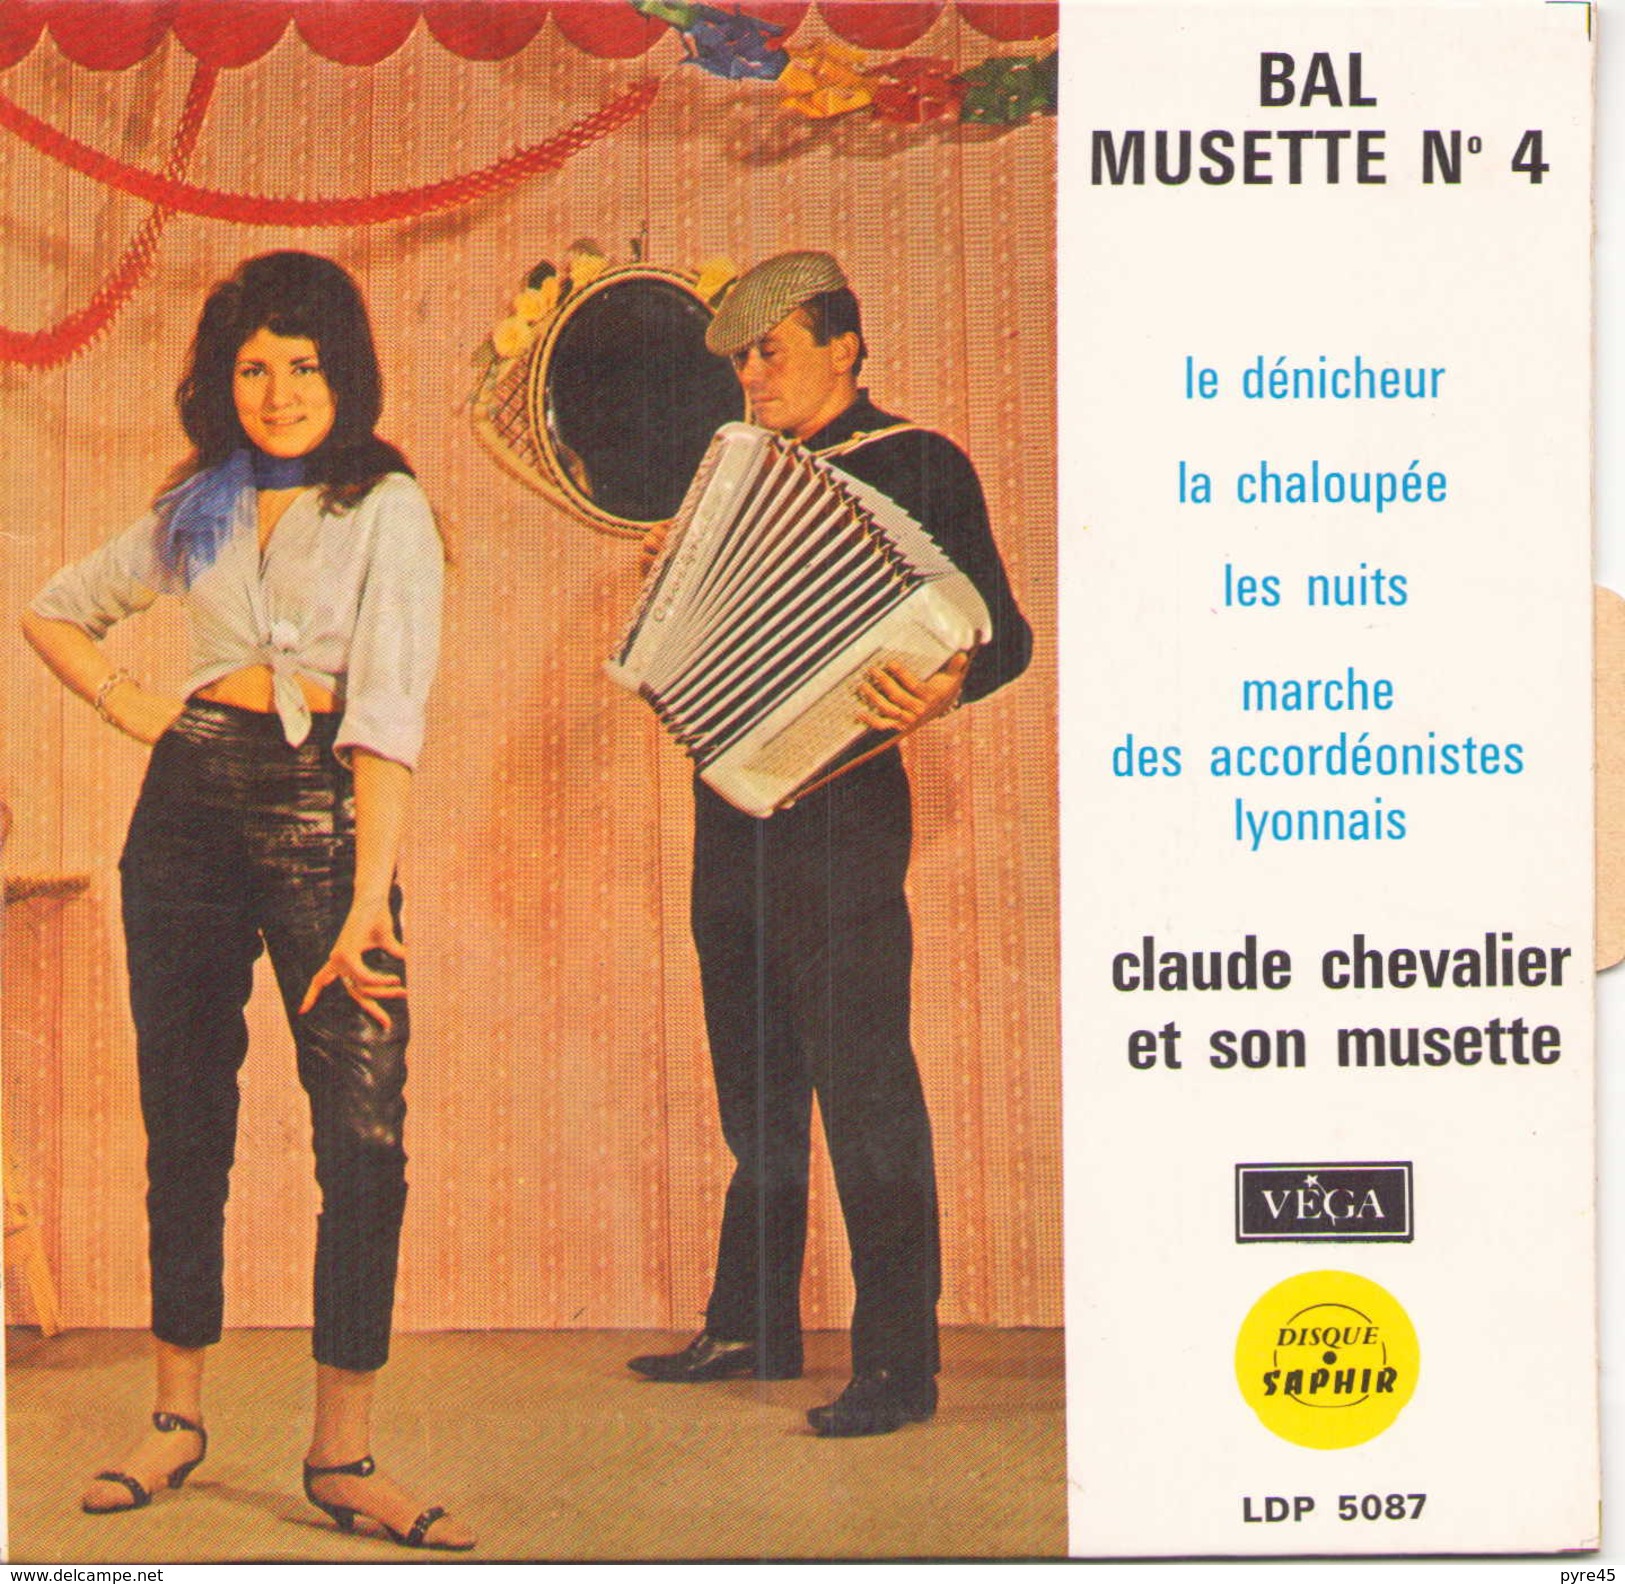 EP 45 TOURS CLAUDE CHEVALIER BAL MUSETTE N° 4 LE DENICHEUR / LA CHALOUPEE + 2 VEGA LDP 5087 - Comiques, Cabaret